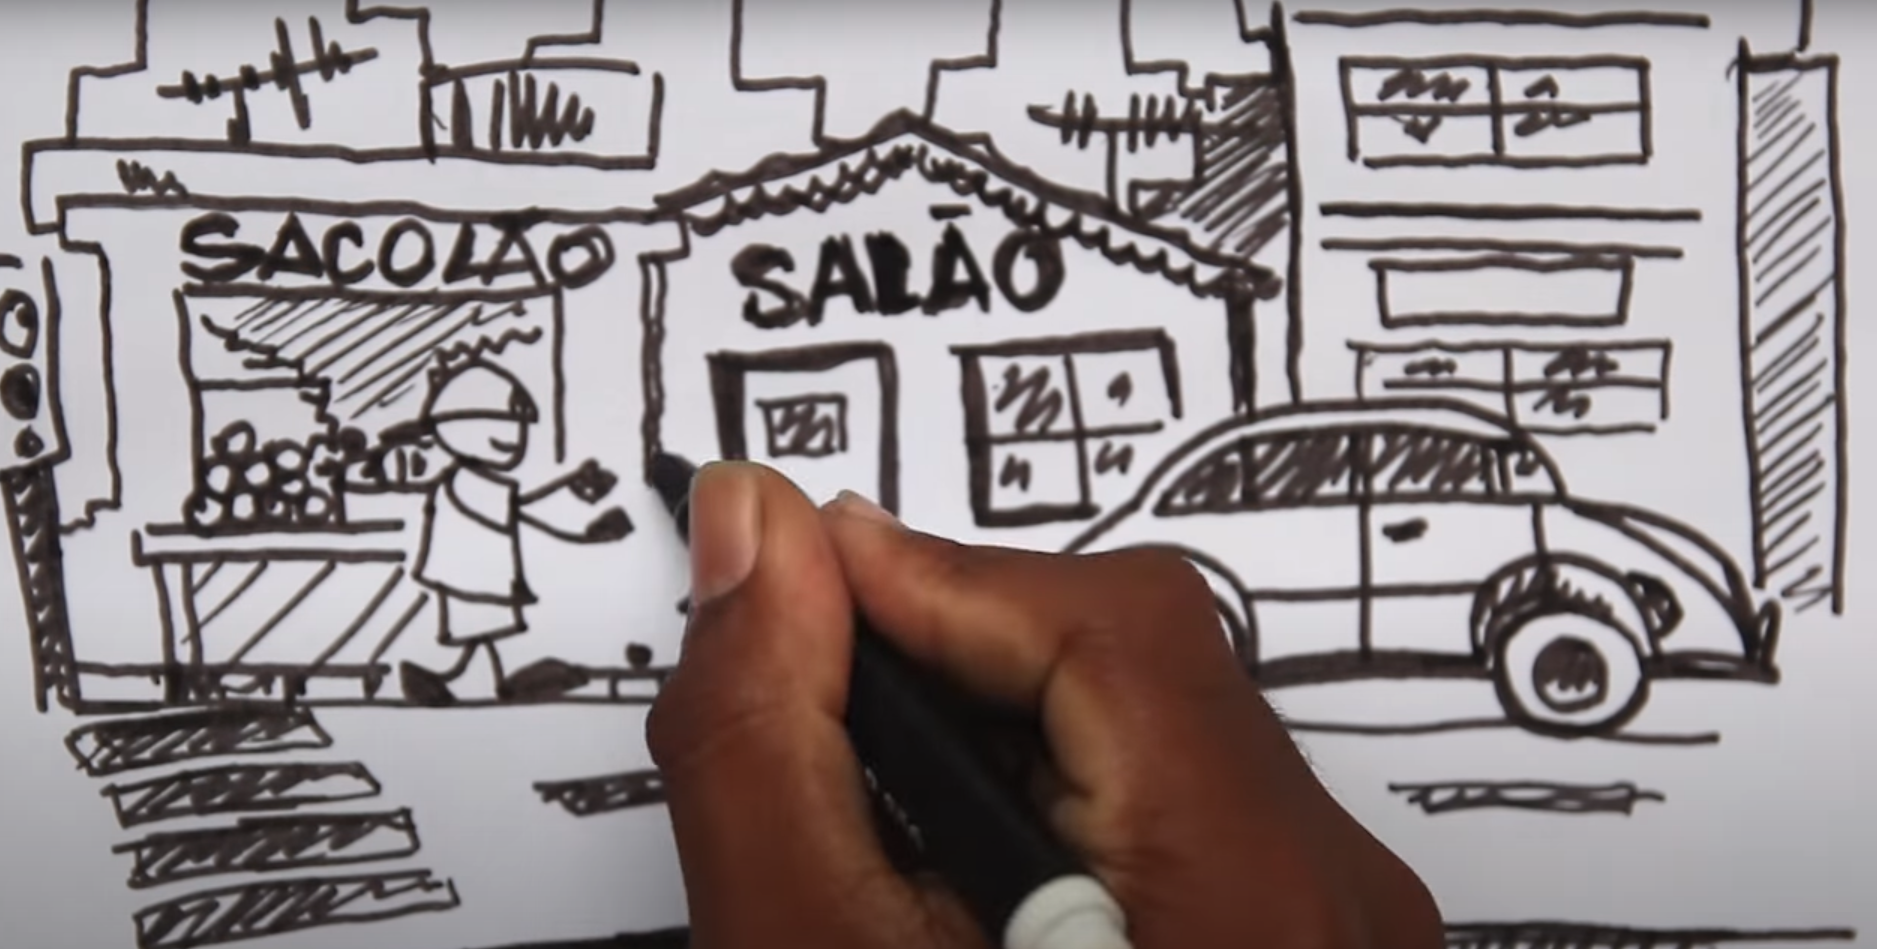 Ilustração do vídeo "O que é favela?" por Rodrigo Binarts